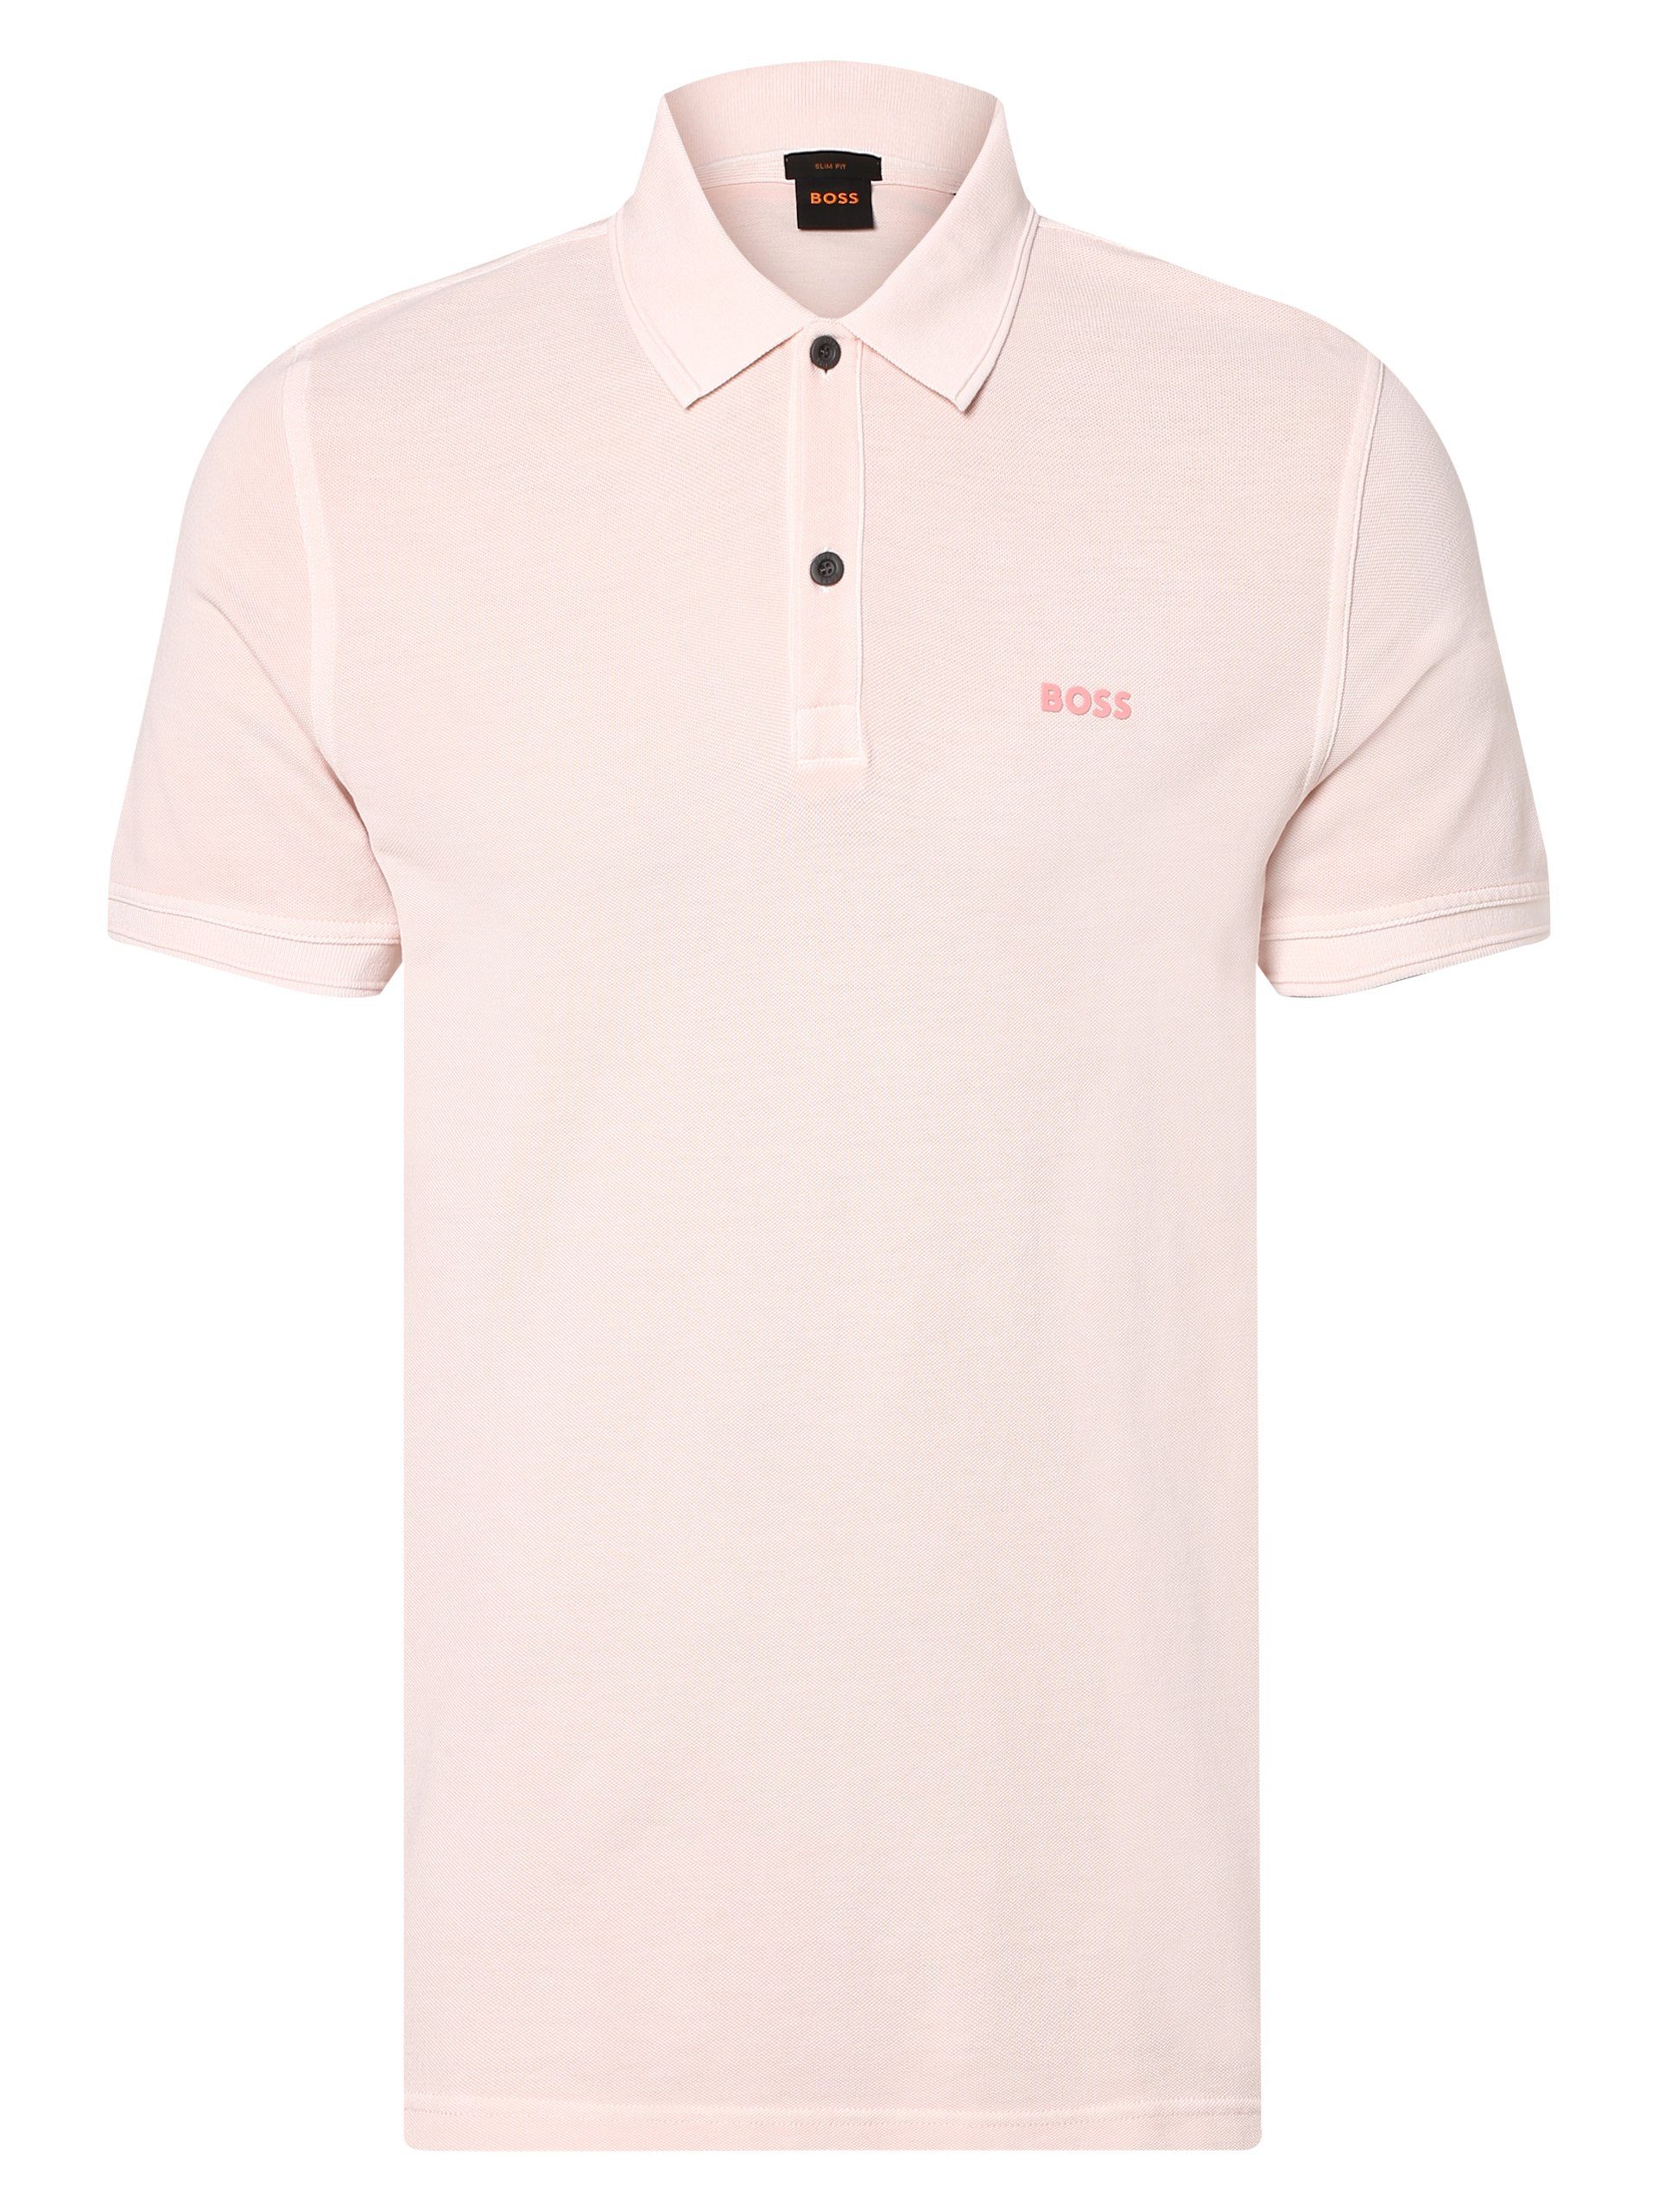 Preisangebot Poloshirt BOSS rosa Prime ORANGE